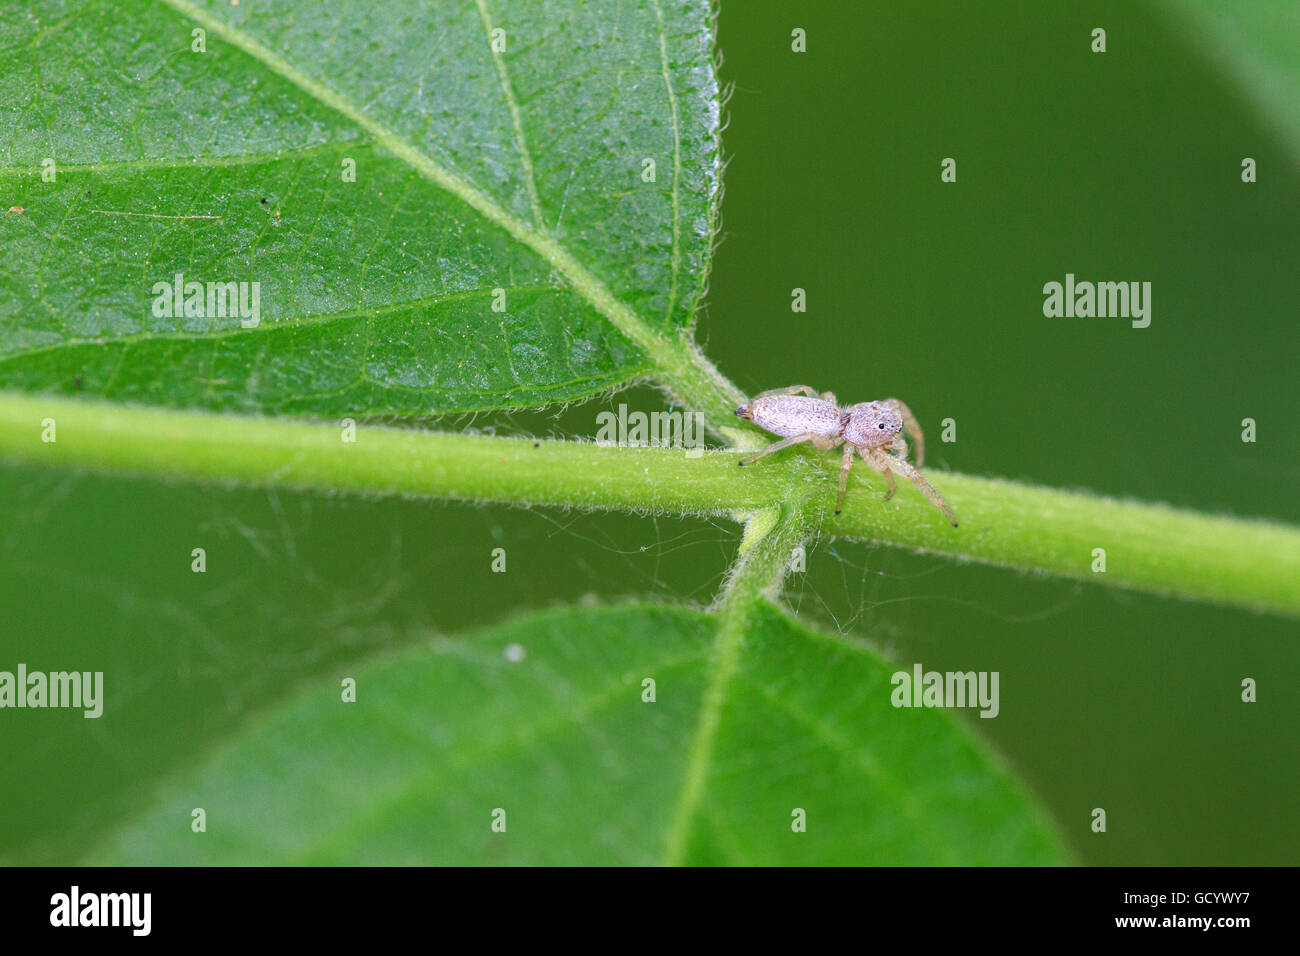 Pequeño, blanco saltando spider (Hentzia sp.) en la planta de tallo. Foto de stock